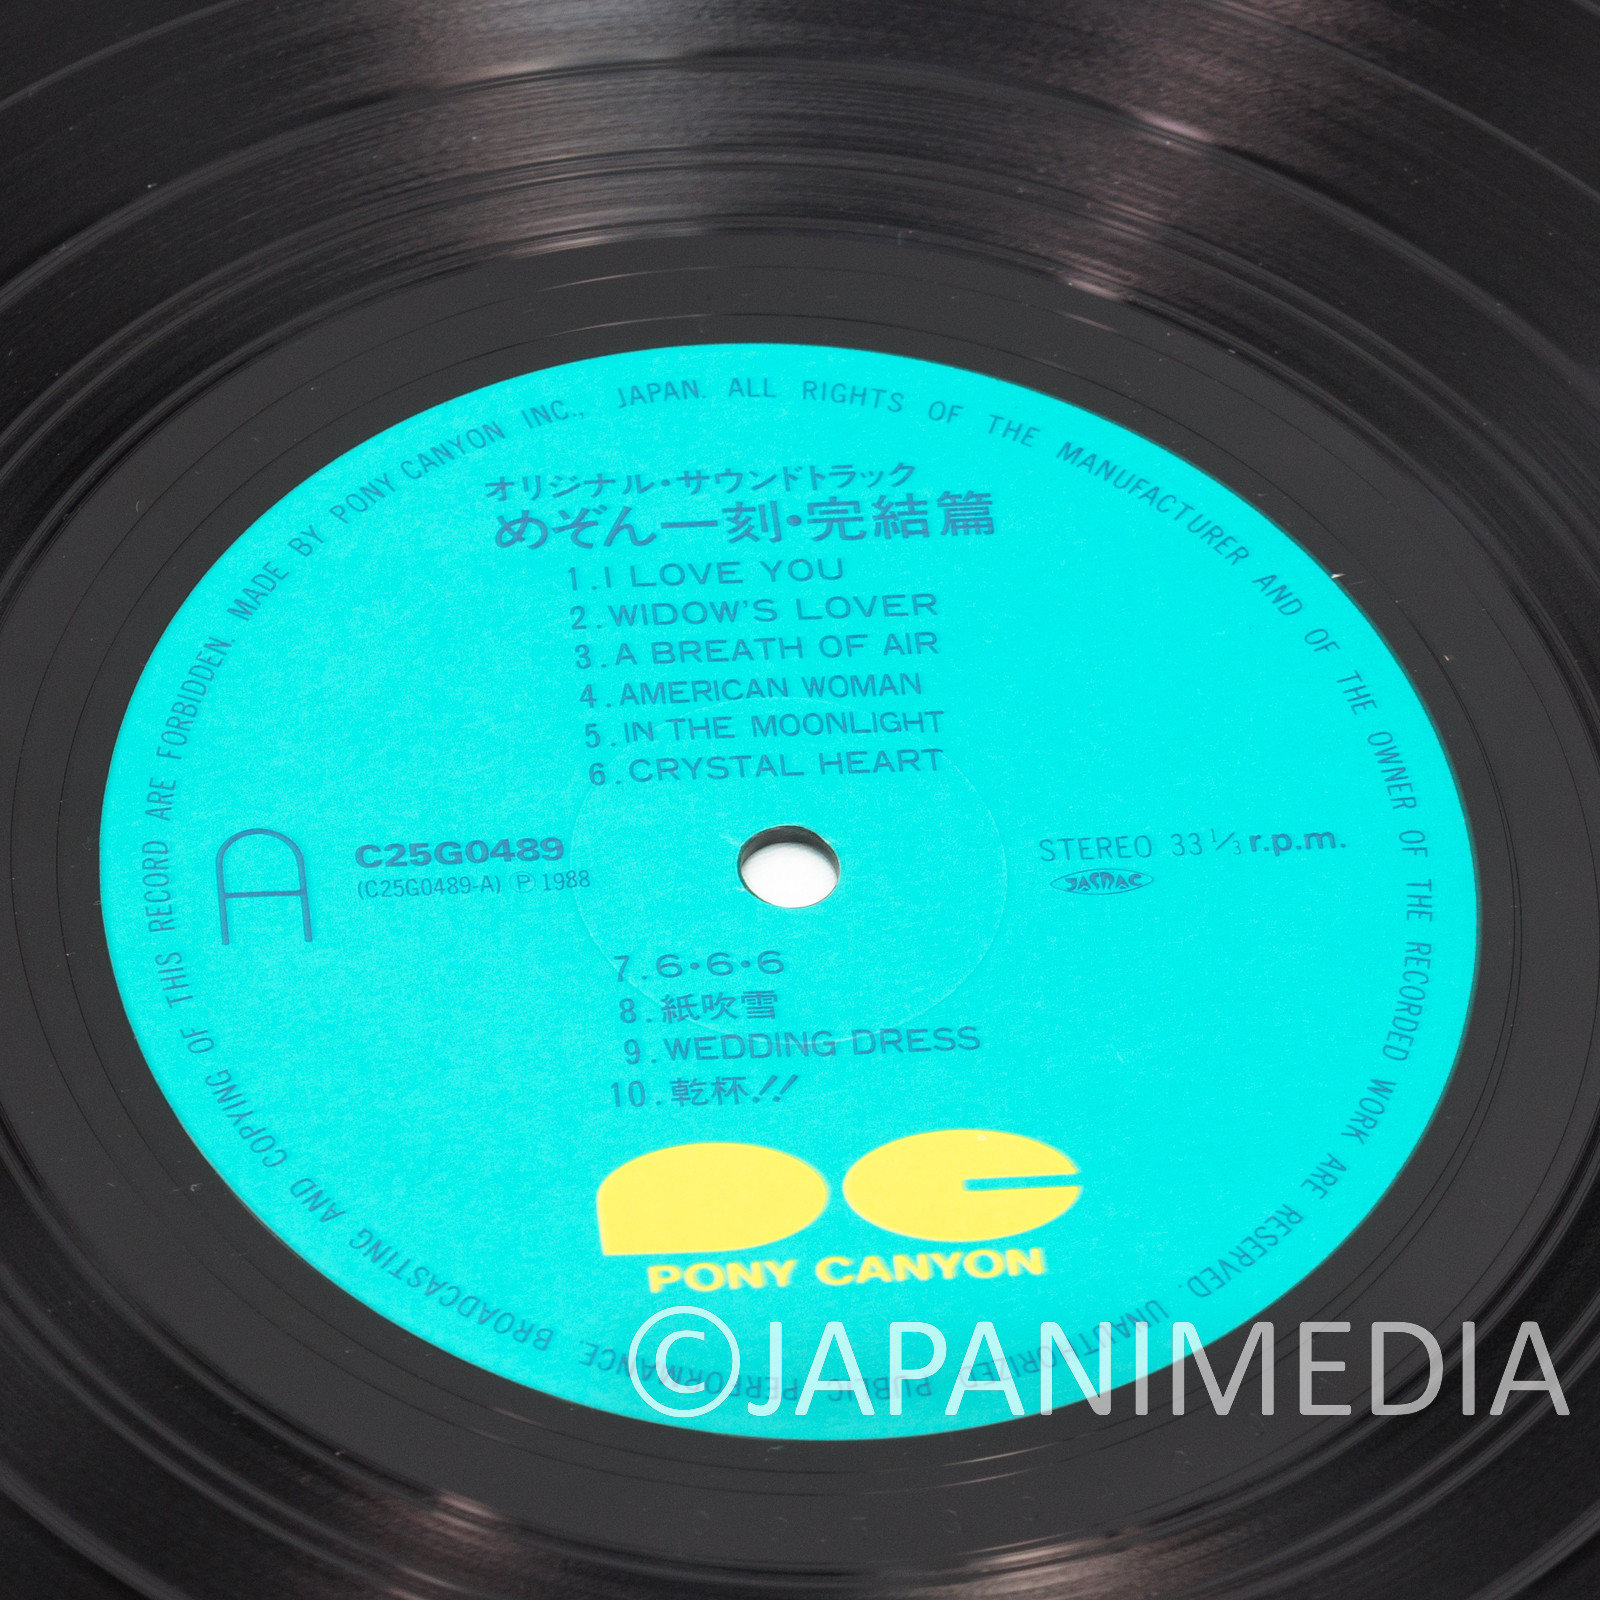 Maison Ikkoku Kanketsuhen BGM Collection 12" Vinyl LP Record C25G-0489